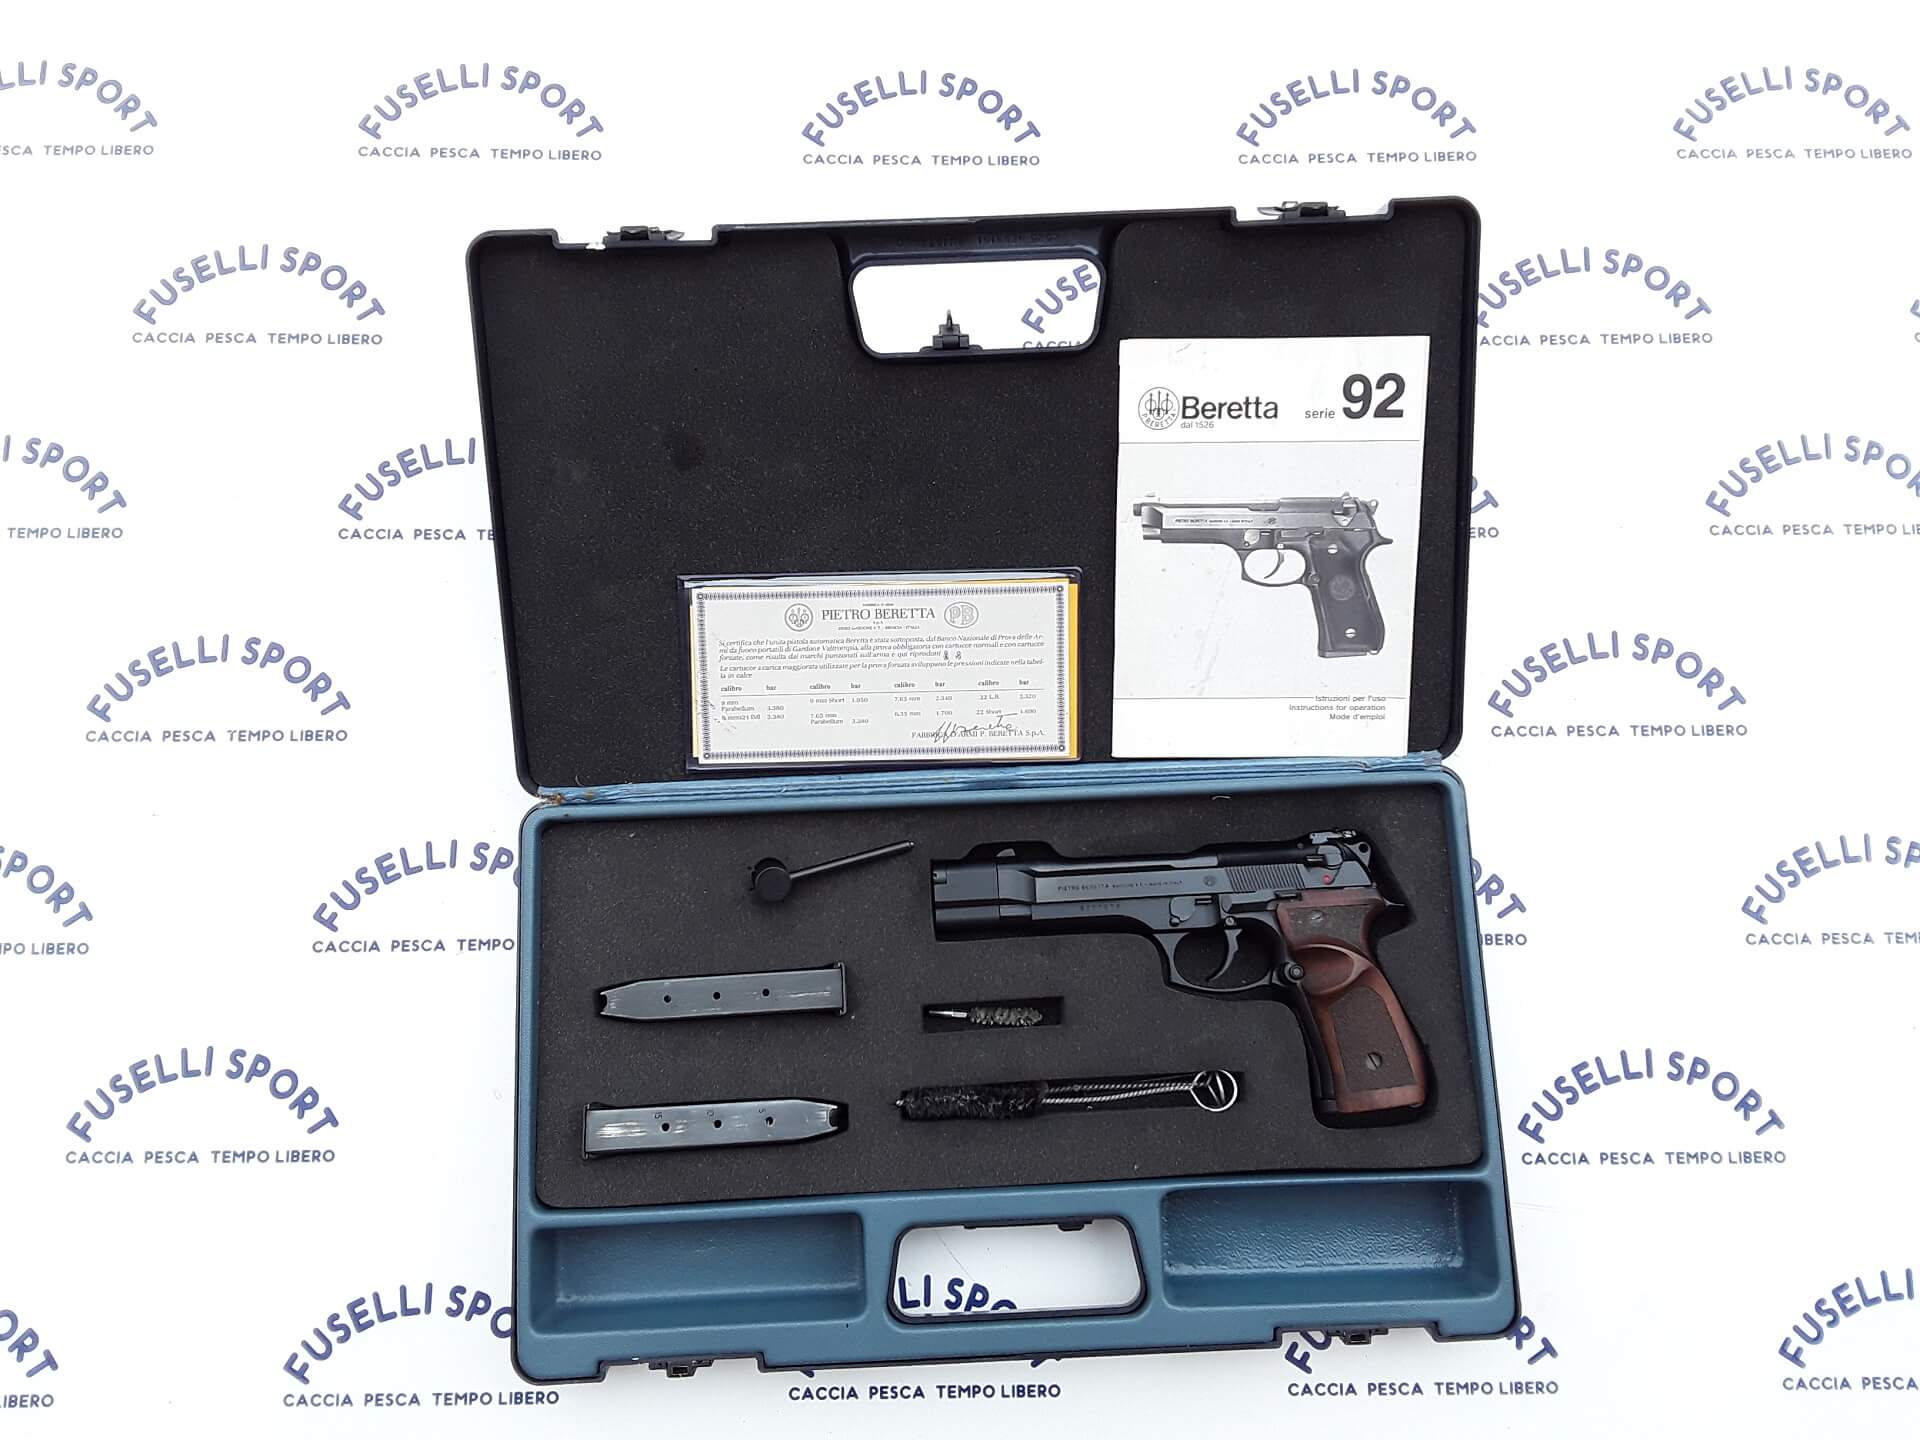 Pistola semiautomatica Beretta modello 98F target Calibro 9×21 corredata da valigetta, 3 caricatori e accessori, ottime condizioni €700